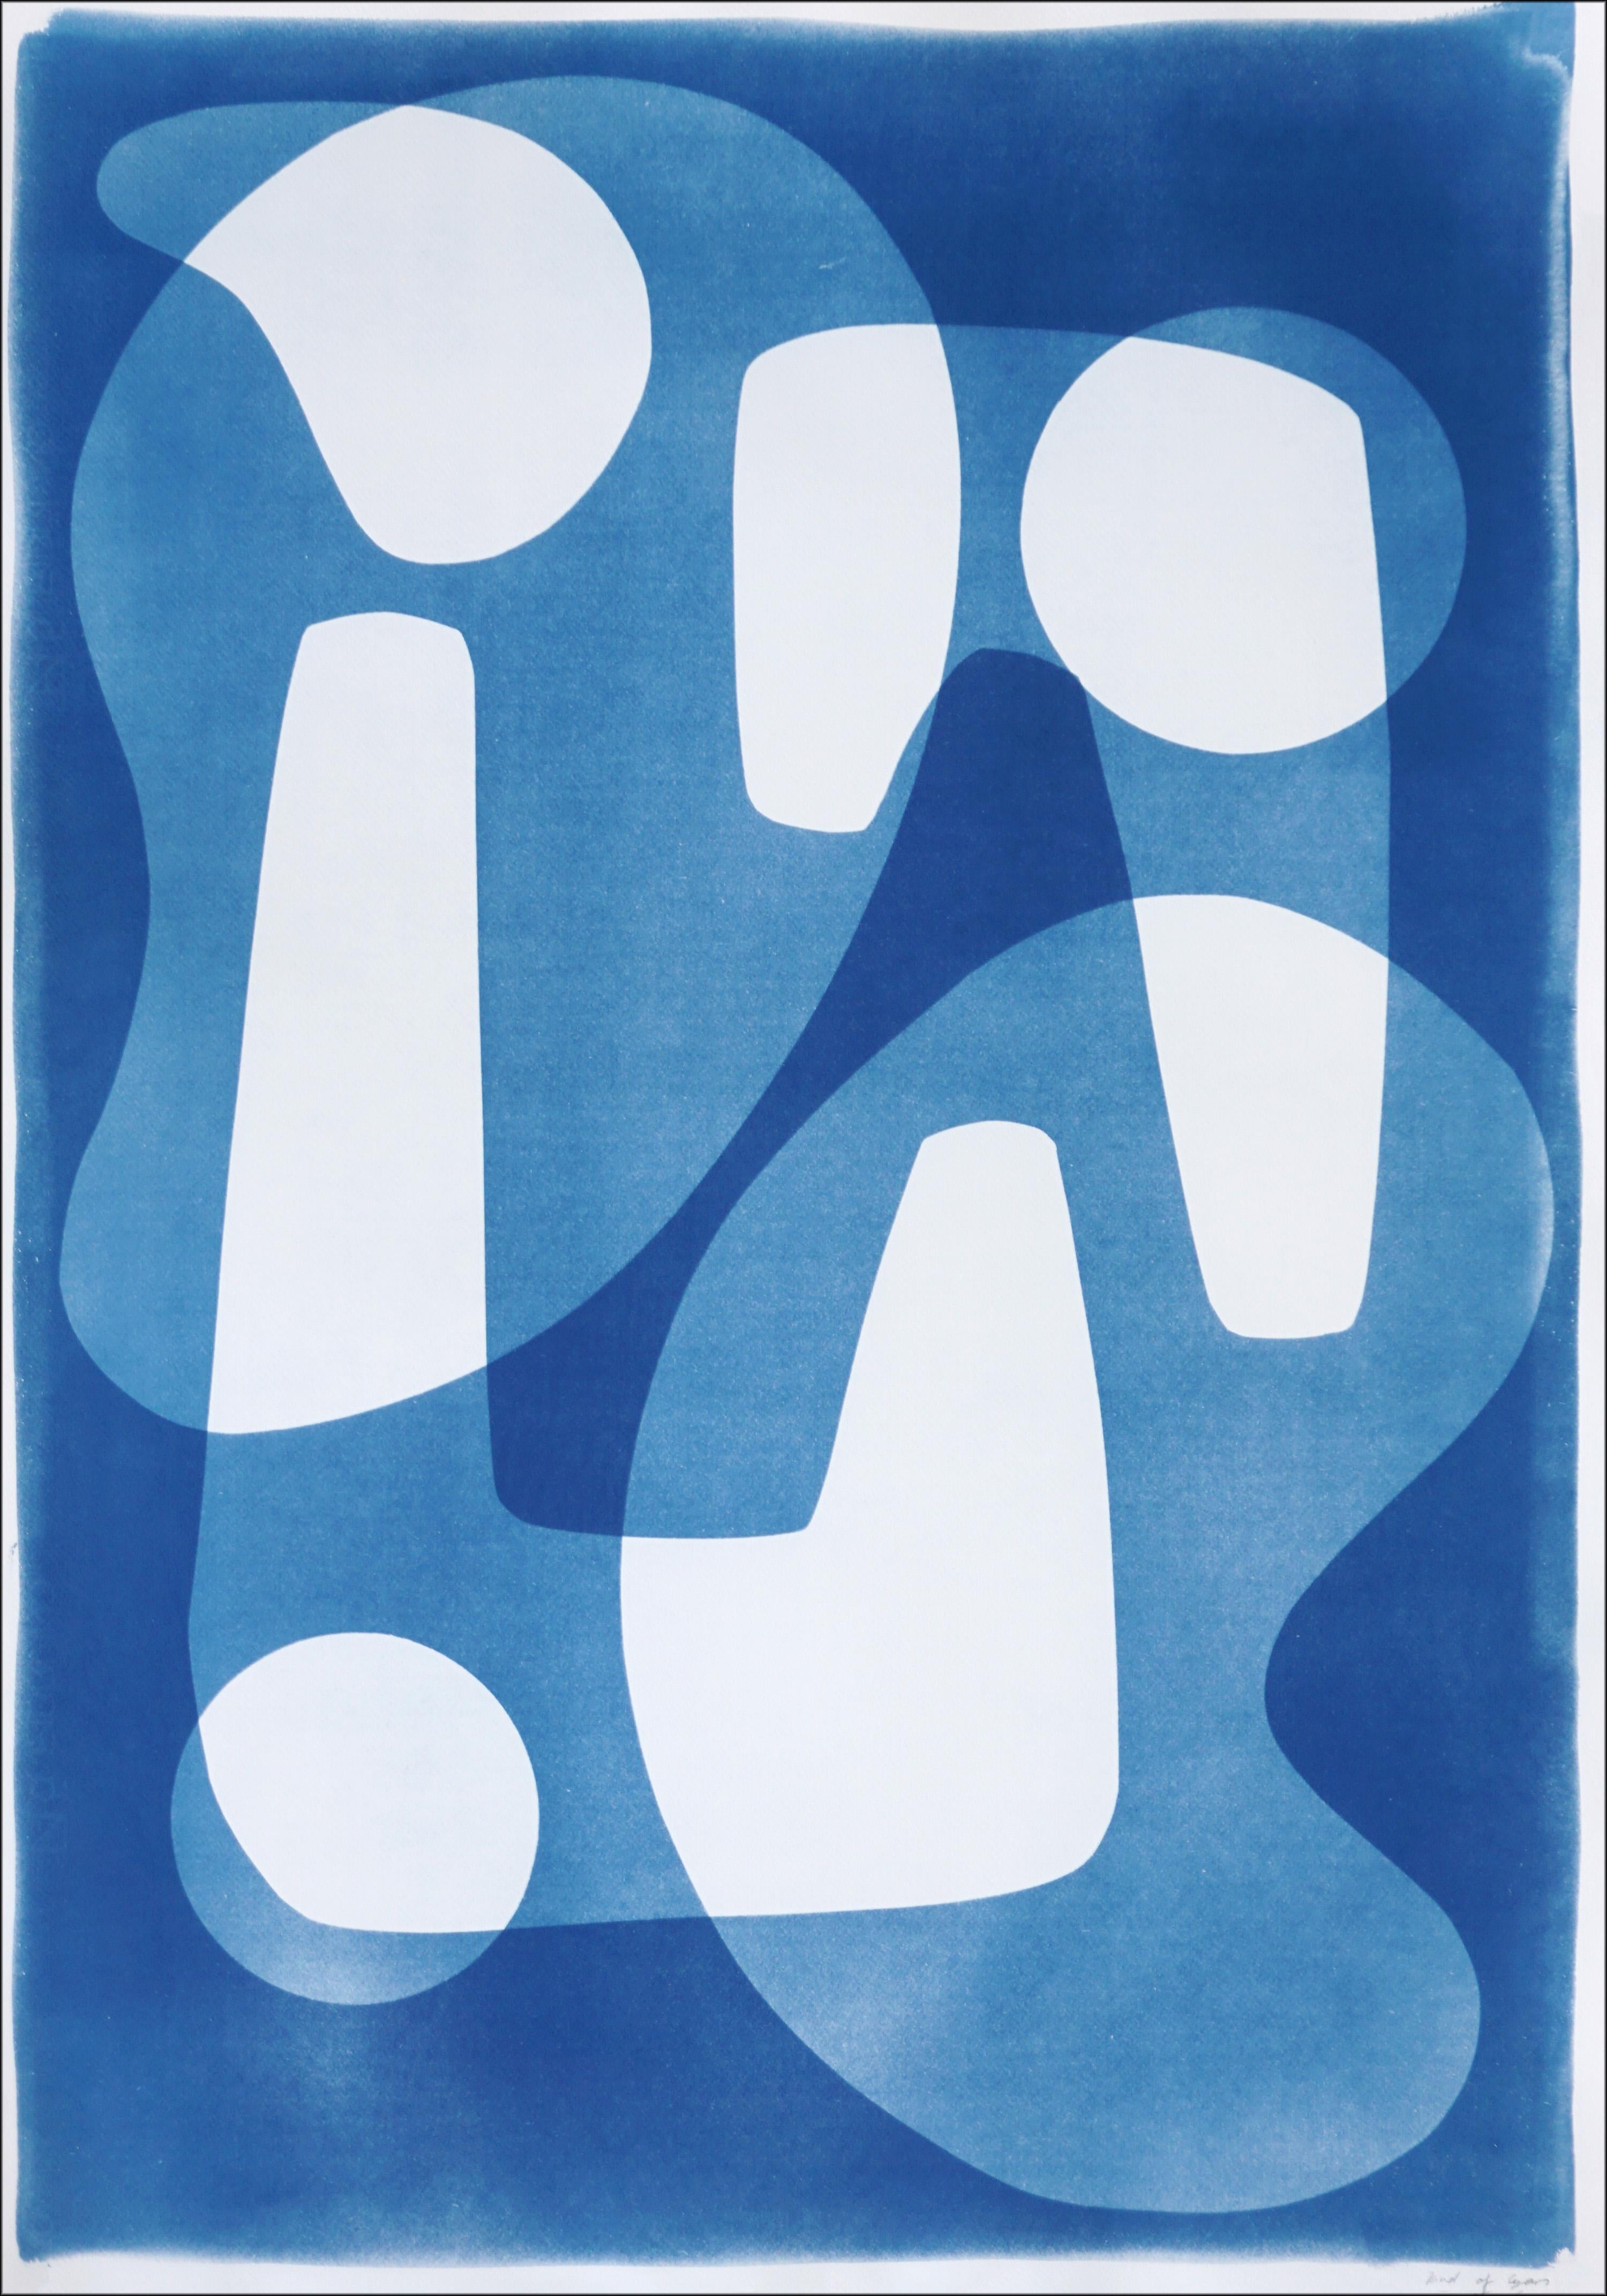 Abstract Photograph Kind of Cyan - Formes modernes et uniques de style Jetsons blanches et bleues, cyanotype fait à la main